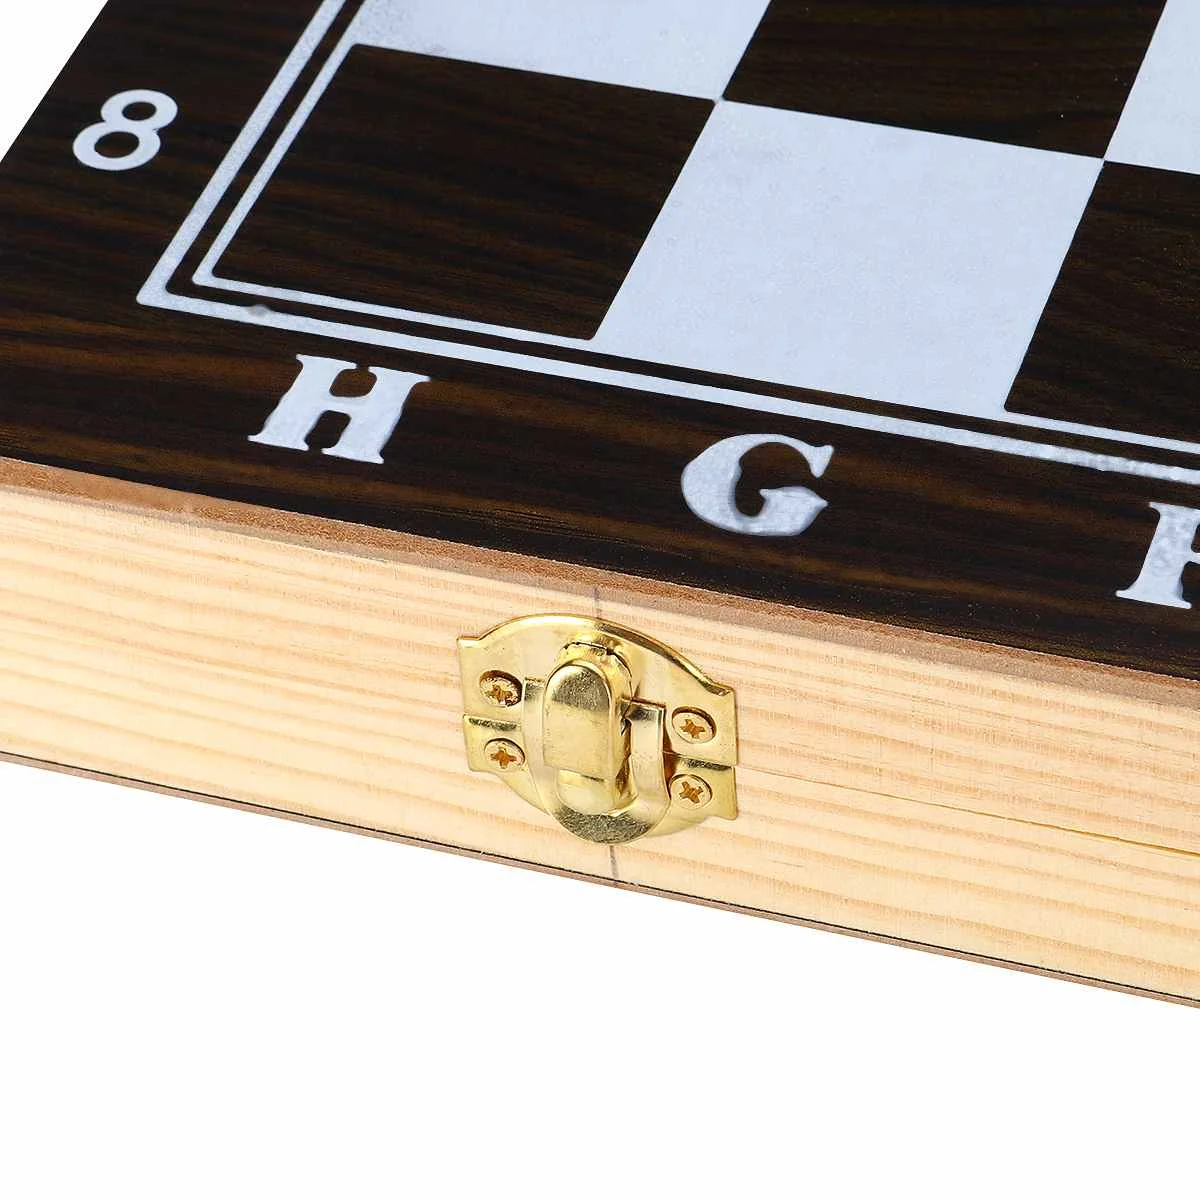 3 в 1 портативная деревянная шахматная доска складная доска шахматная игра Международный шахматный набор для вечерние семейные мероприятия